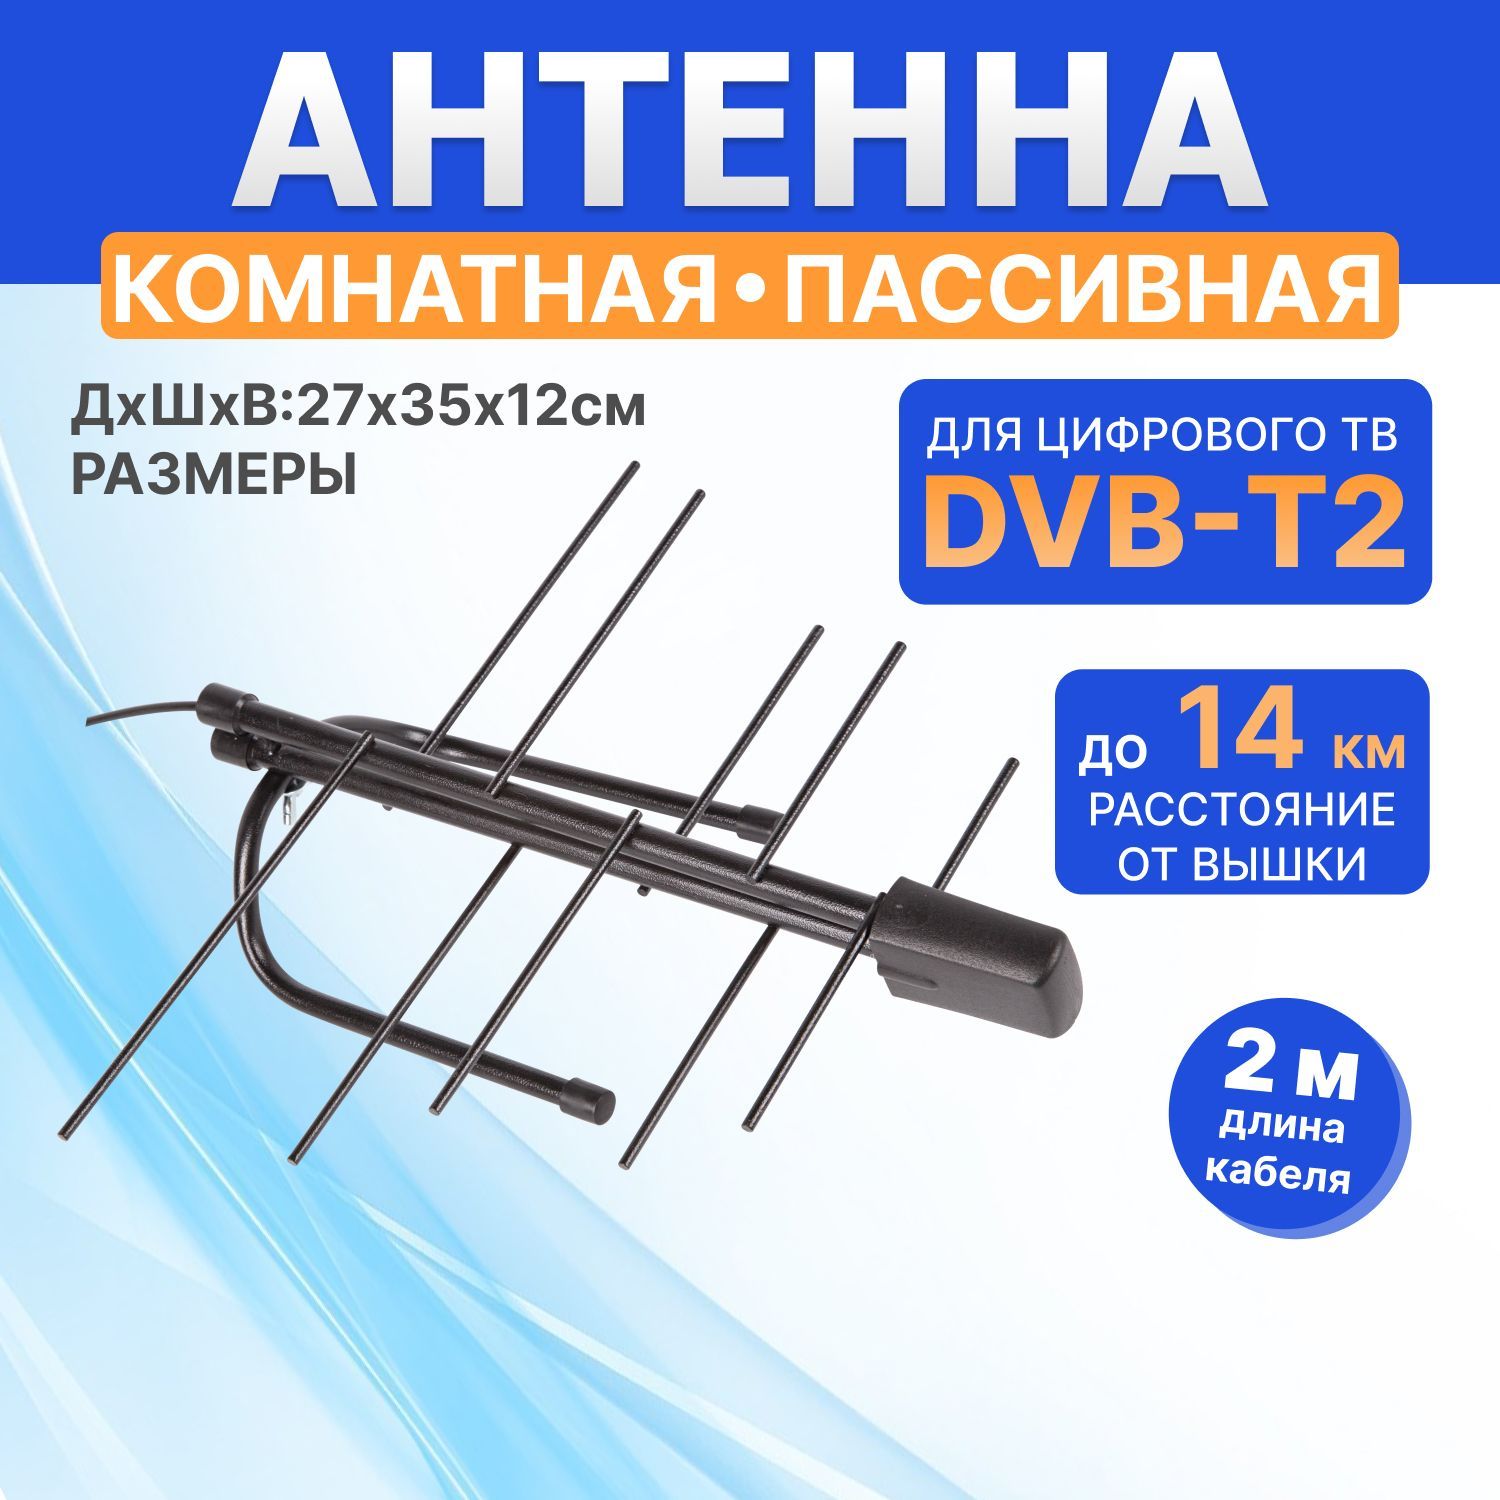 Эфирные антенны — купить в интернет-магазине «ВелаСат»